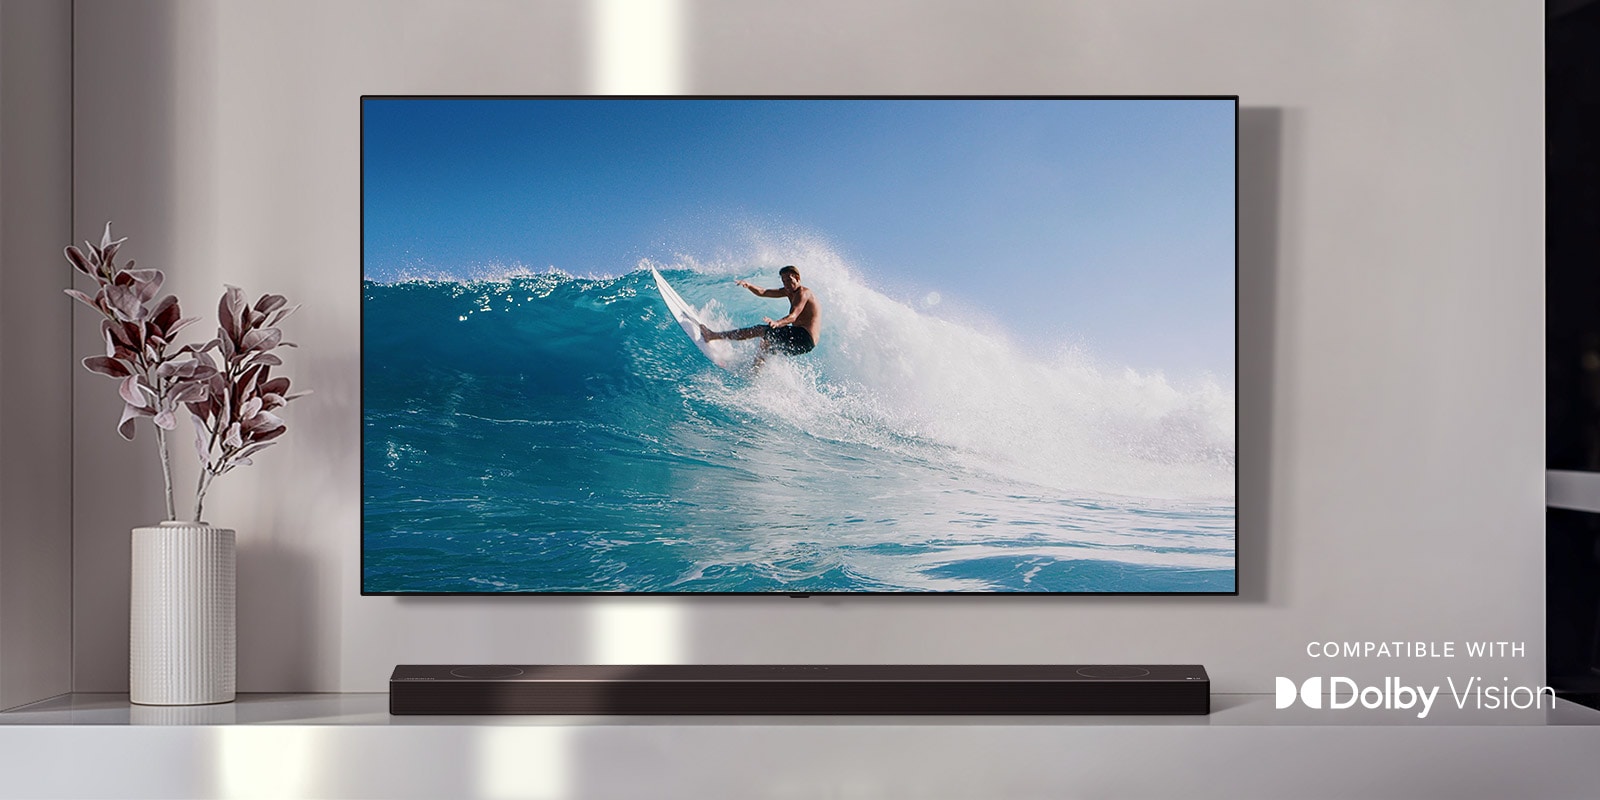 تلویزیون روی دیوار نصب شده است. تلویزیون مردی را در حال موج سواری روی موجی بزرگ نشان می‌دهد. ساندبار ال‌جی درست در زیر تلویزیون و روی قفسه‌ای به رنگ سفید قرار گرفته است. گلدانی با گل‌های داخلش درست در کنار ساندبار مشاهده می‌شود. (ویدئو را پخش کنید) 